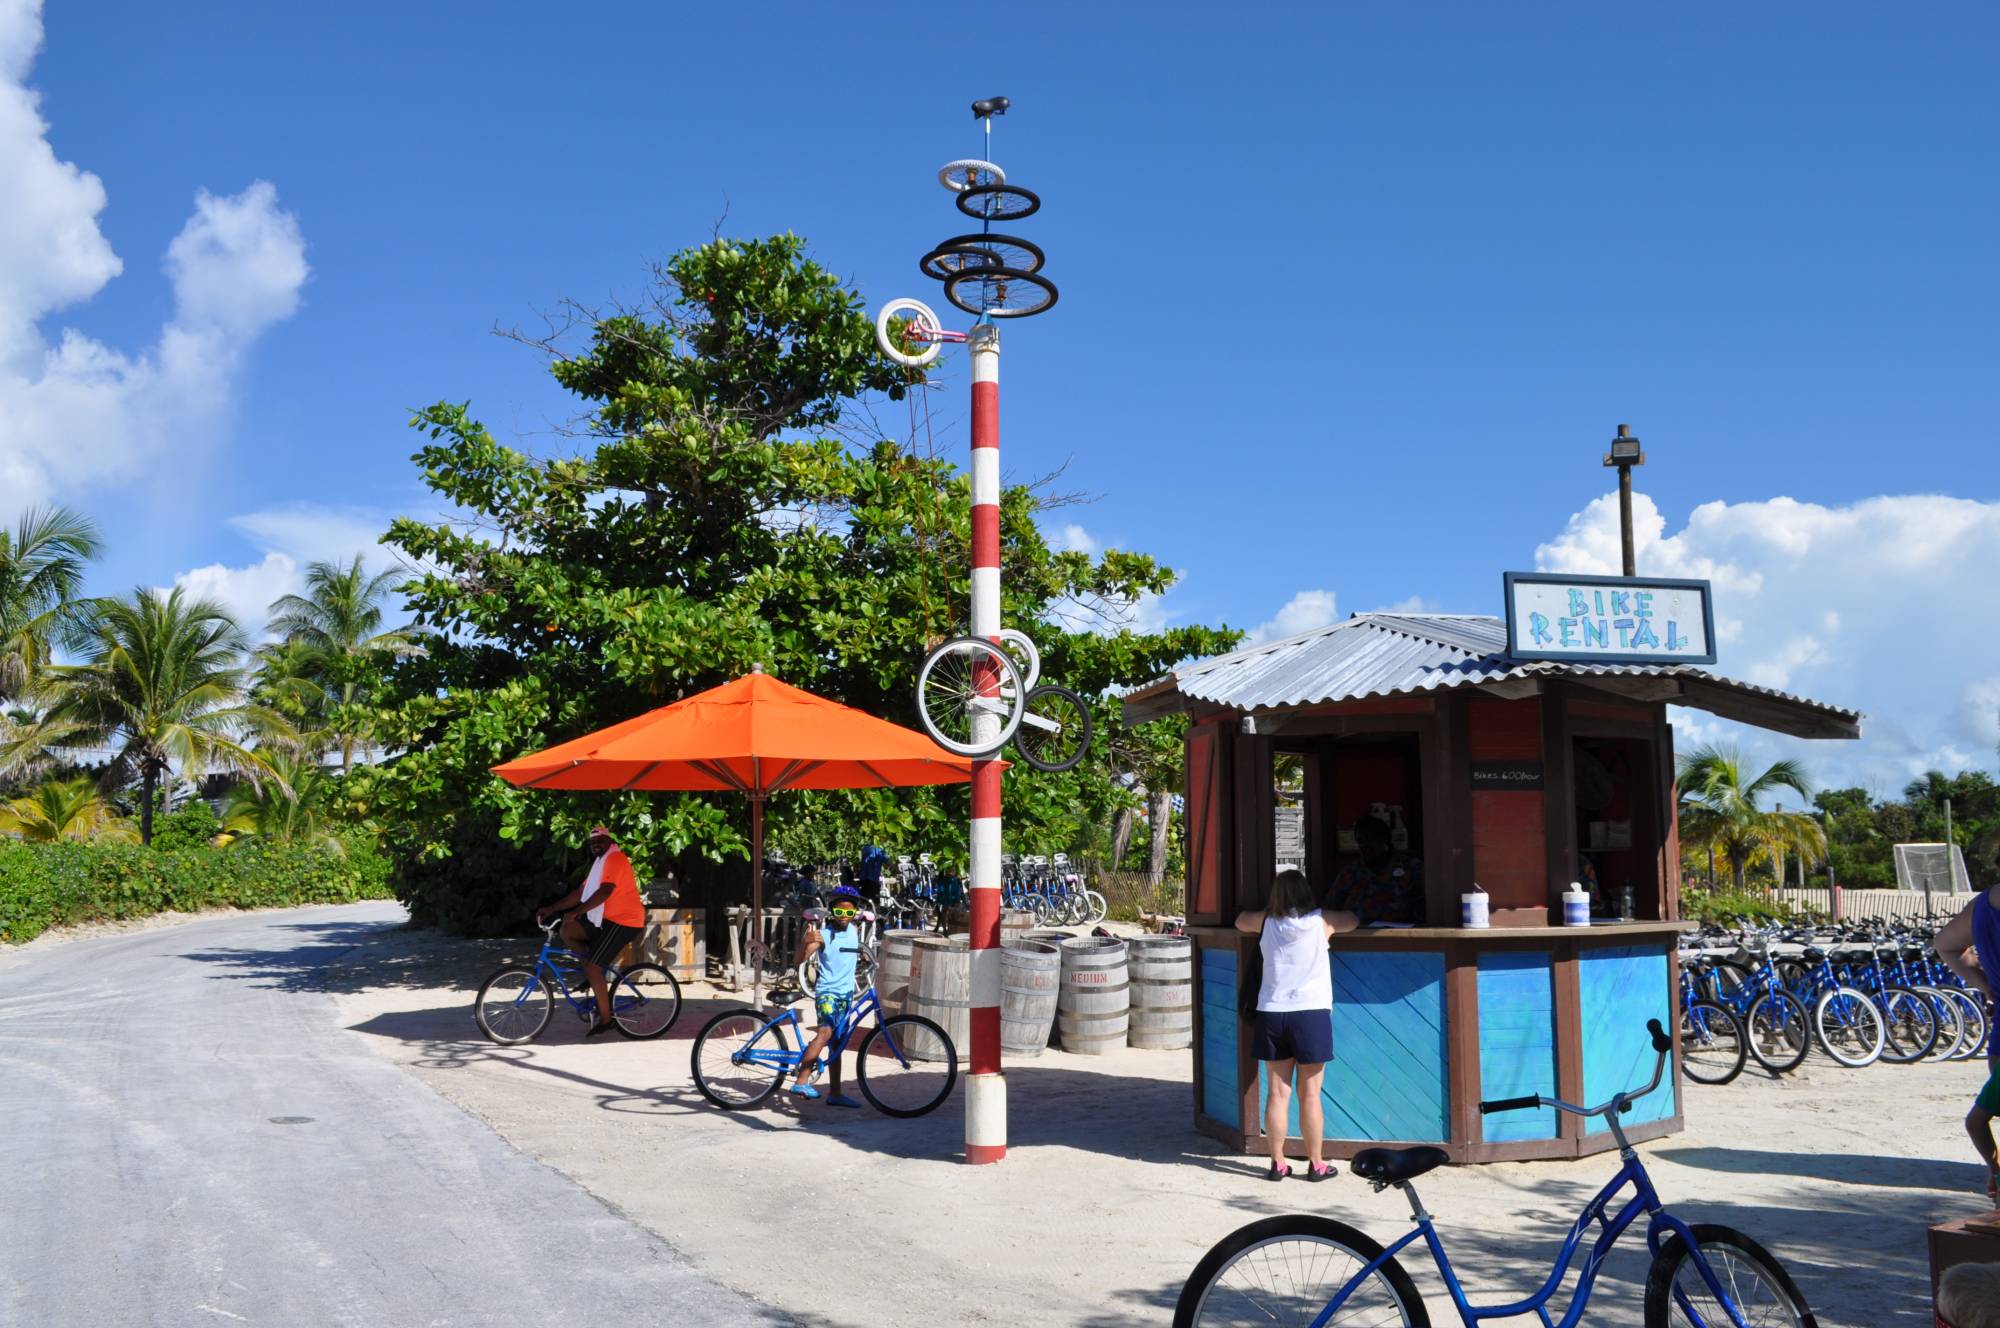 Explore Castaway Cay by bike |PassPorter.com